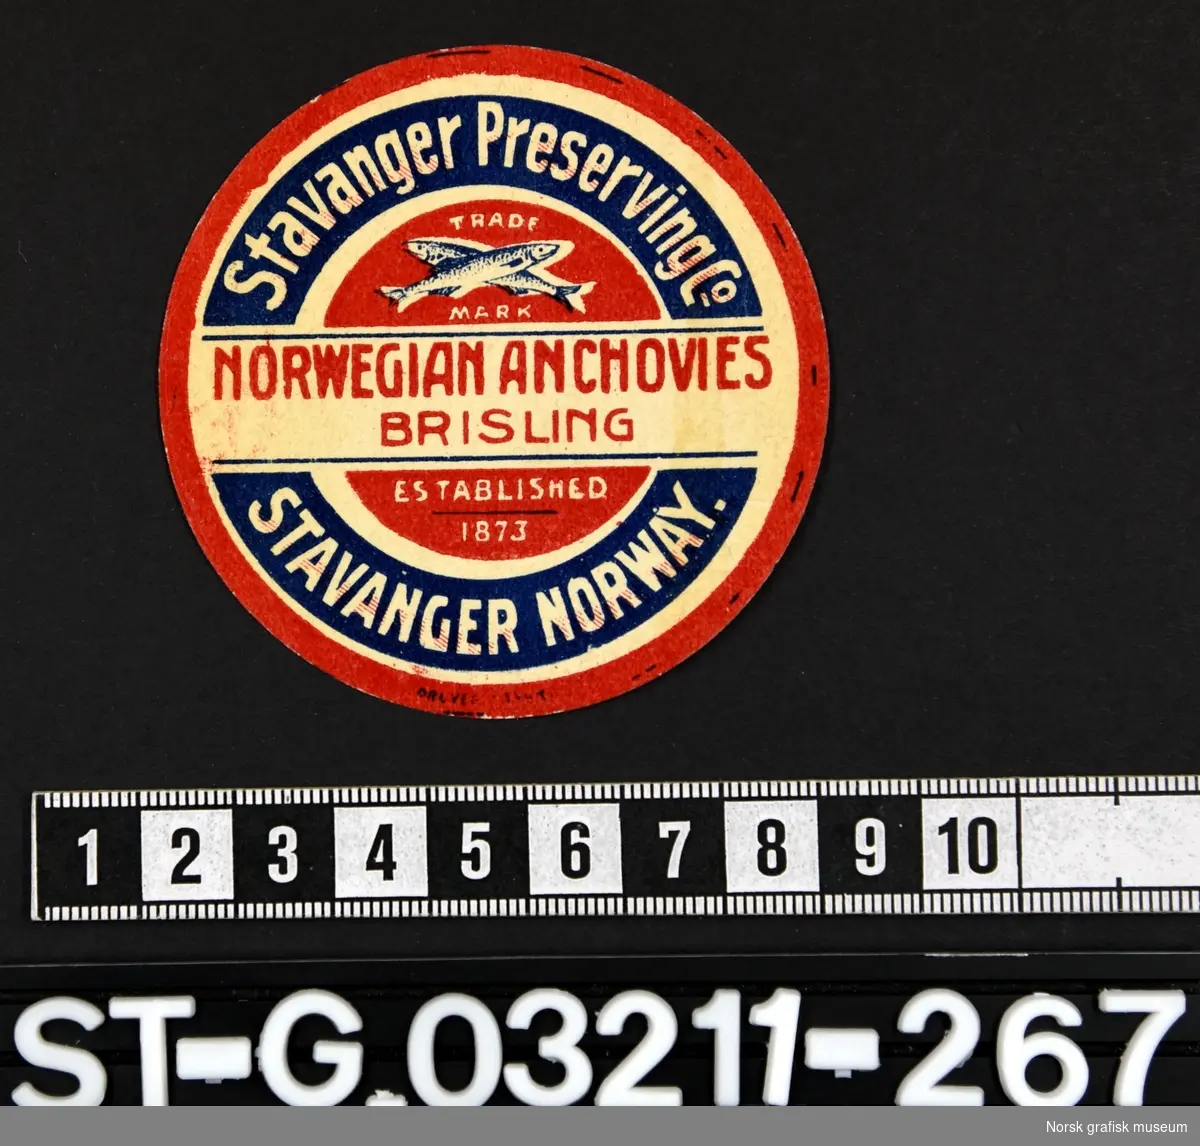 Rund etikett i hvitt, rødt og blått. 

"Norwegian anchovies brisling"